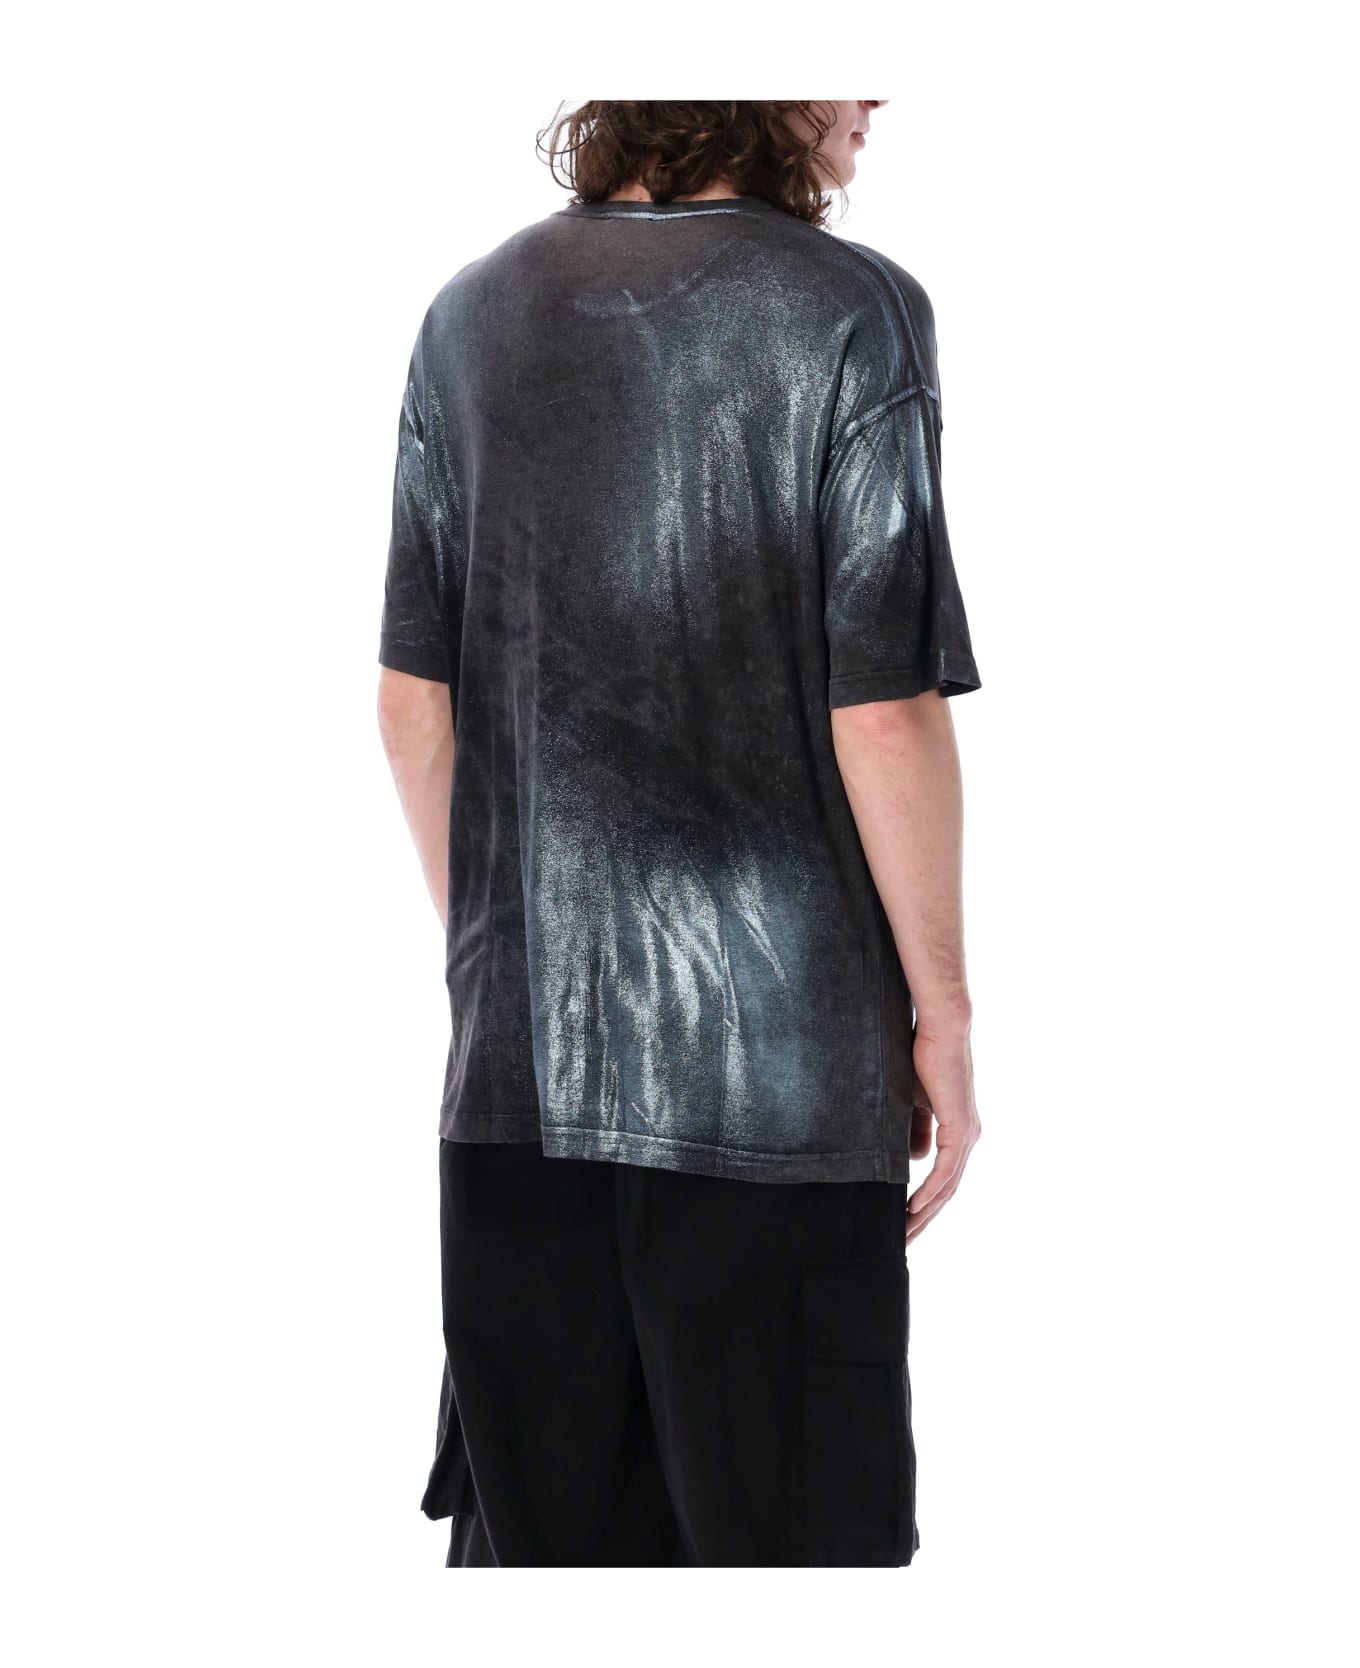 Diesel T-buxt Faded Metallic T-shirt - BLACK WASH